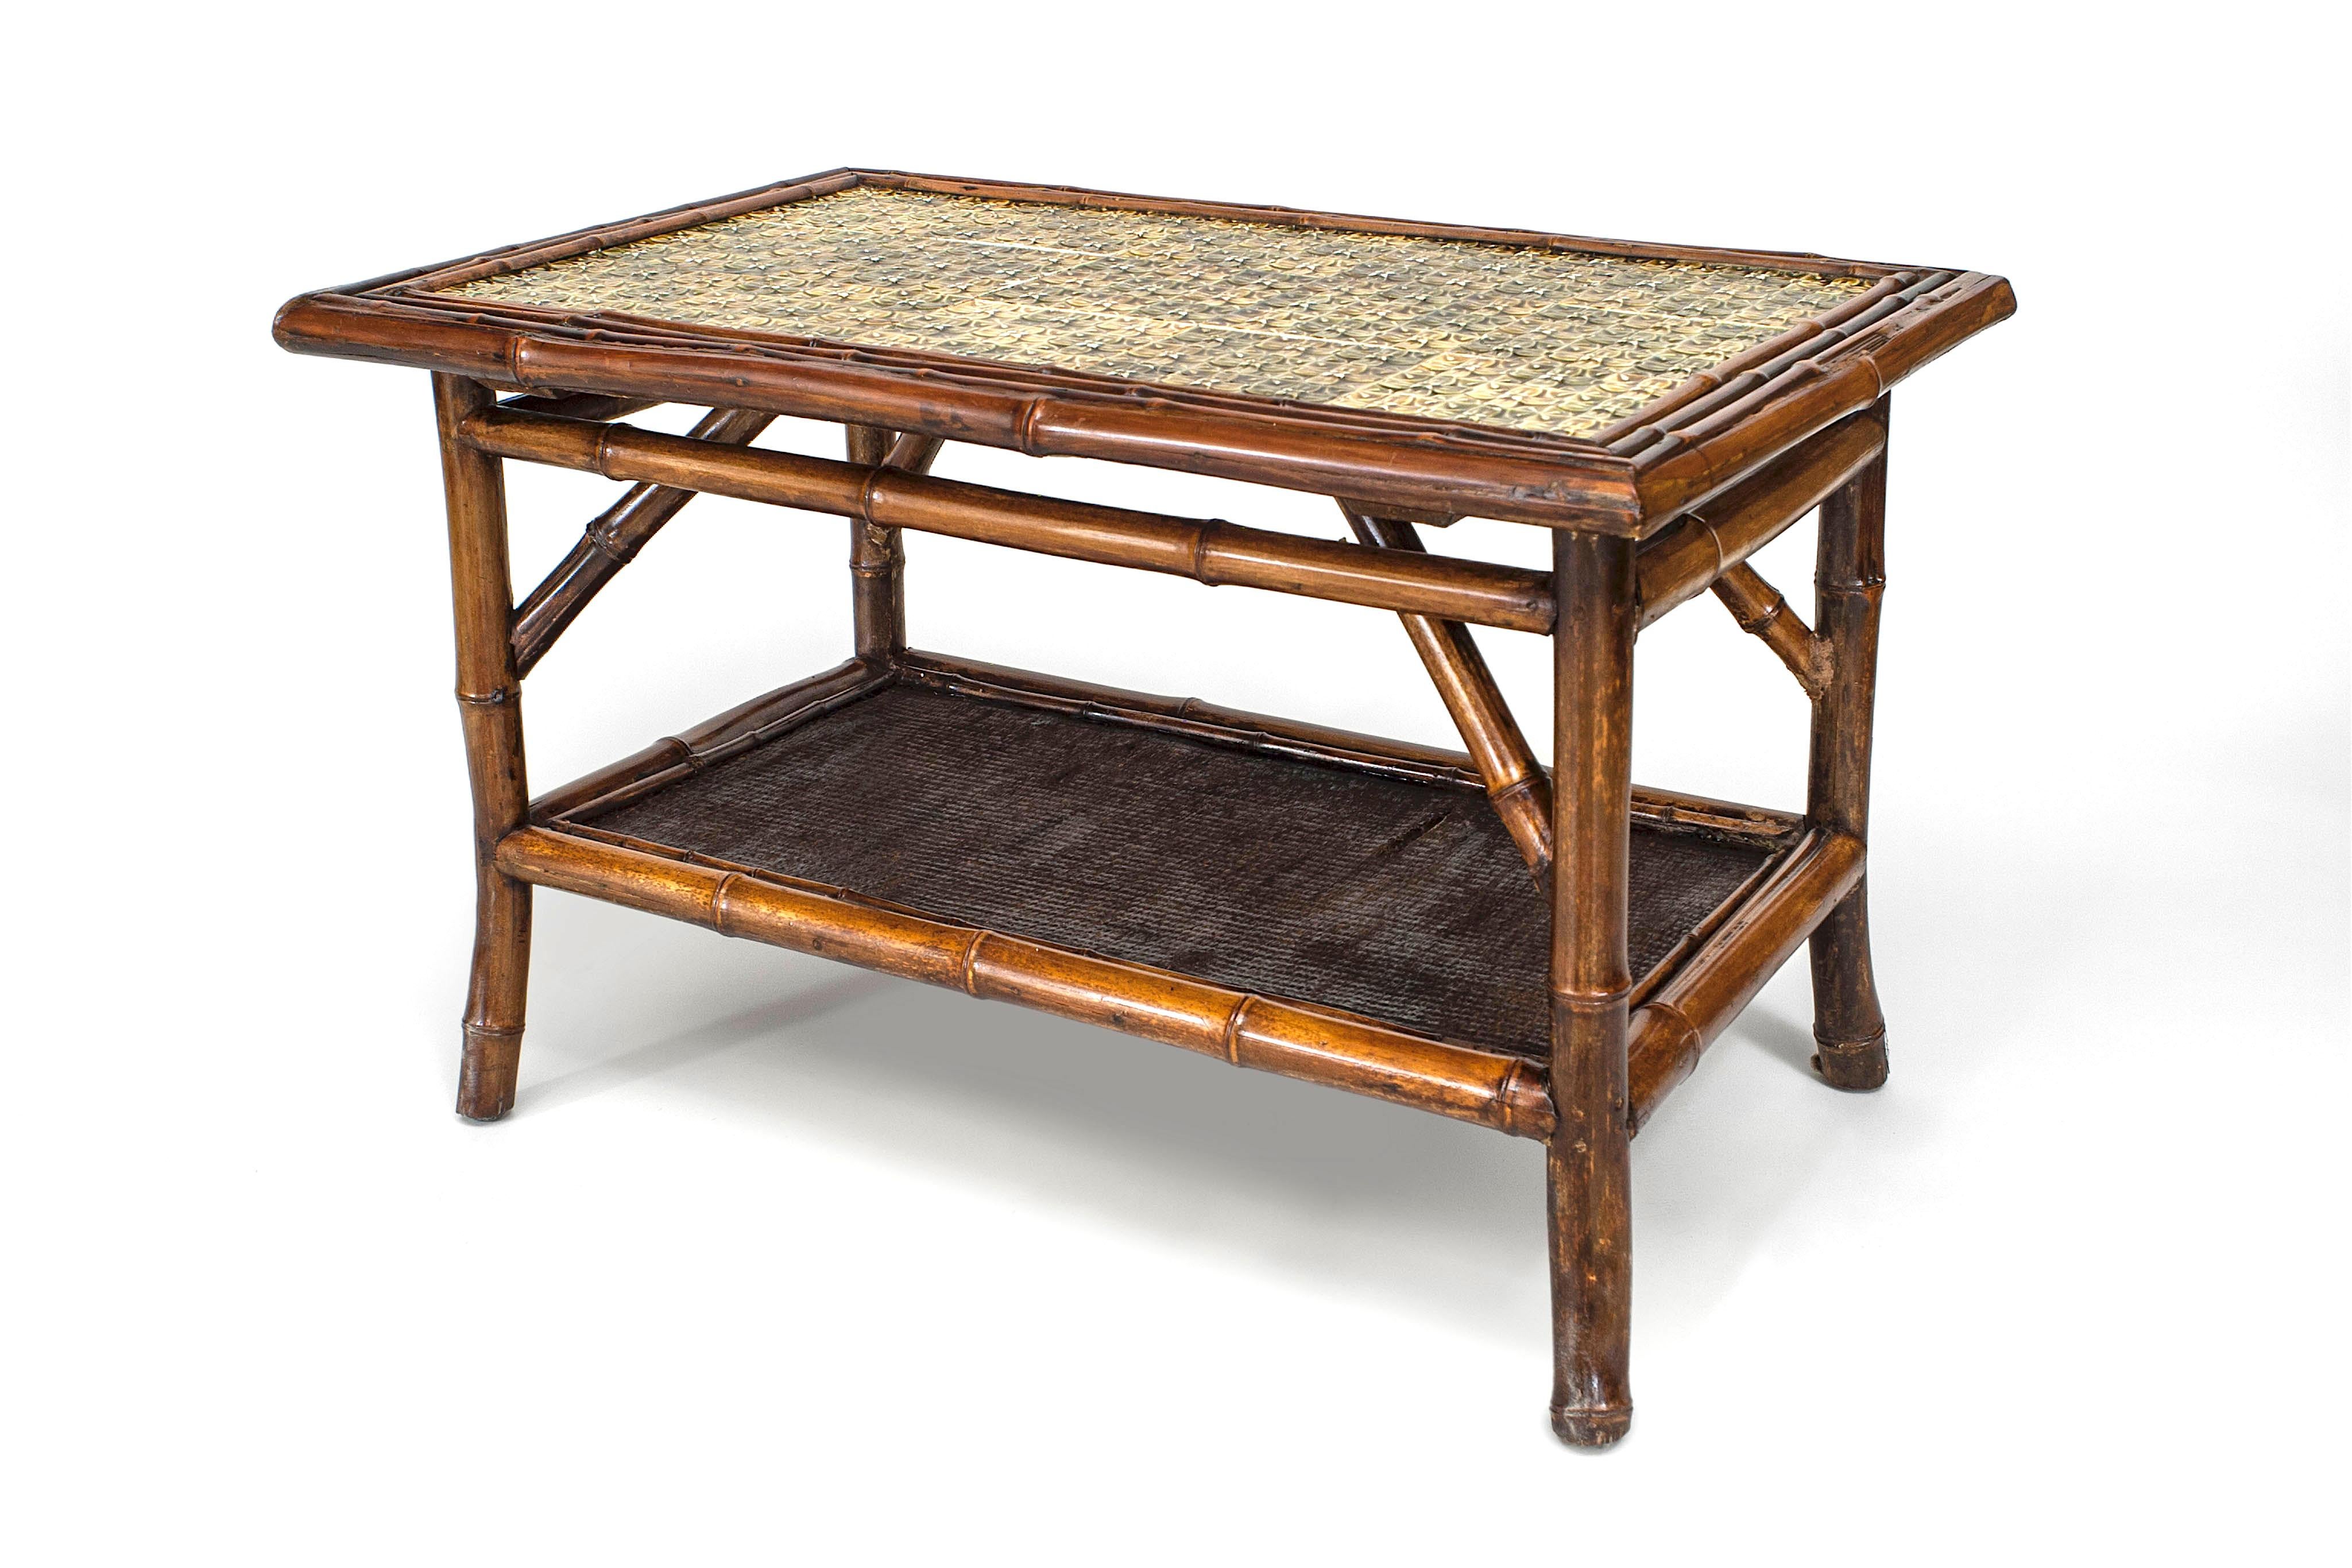 Table basse rectangulaire en bambou anglais (19e siècle) avec un plateau en tuile verte et une étagère inférieure couverte de jonc.
